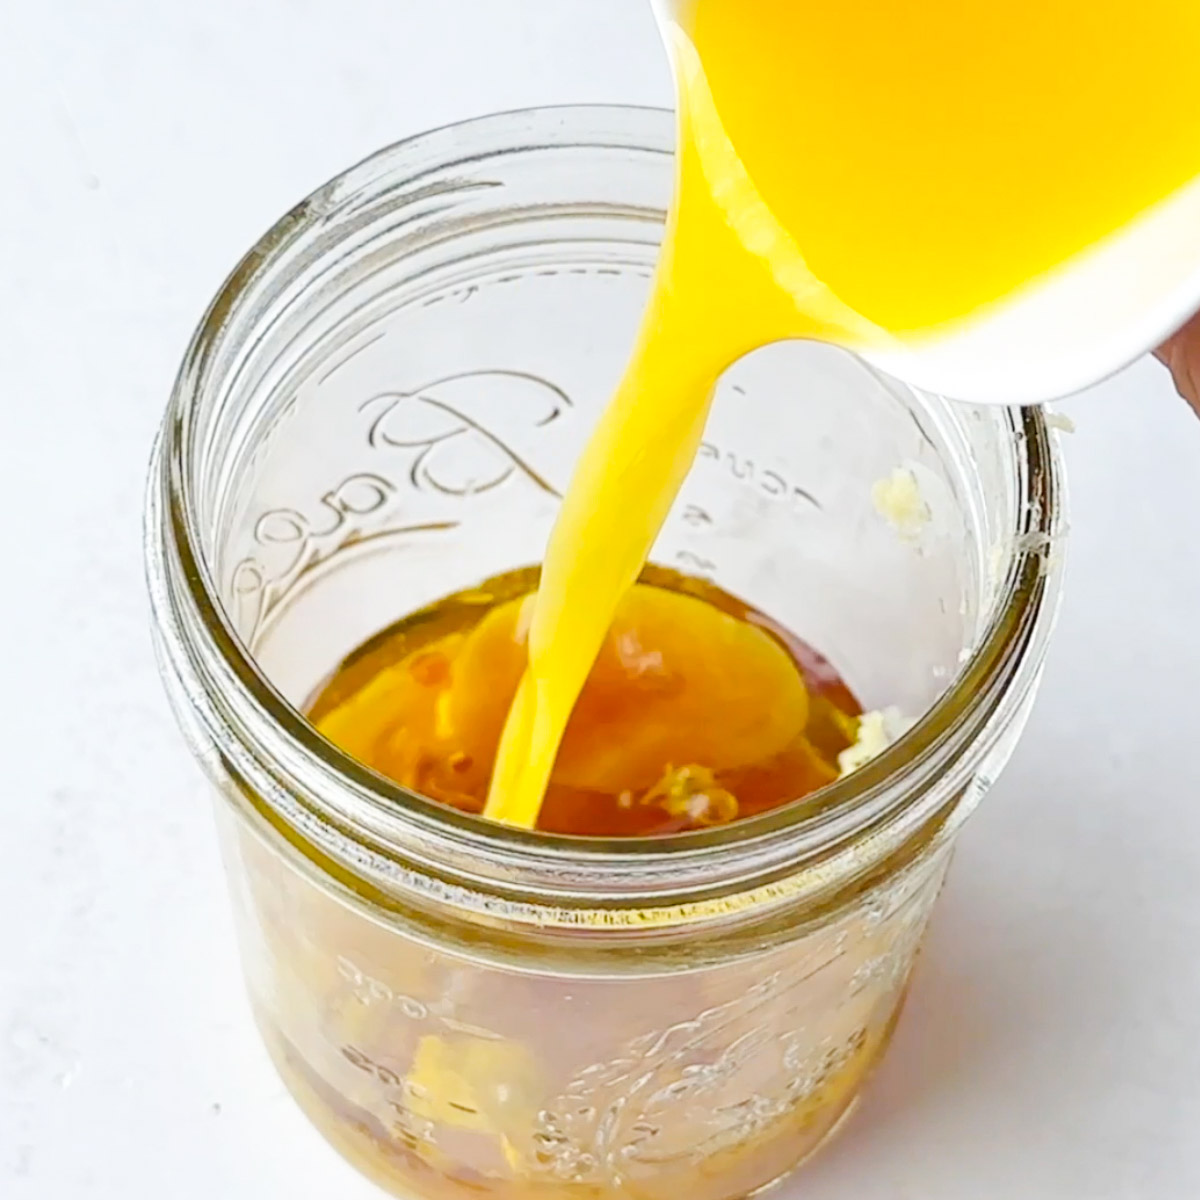 add orange juice to the jar